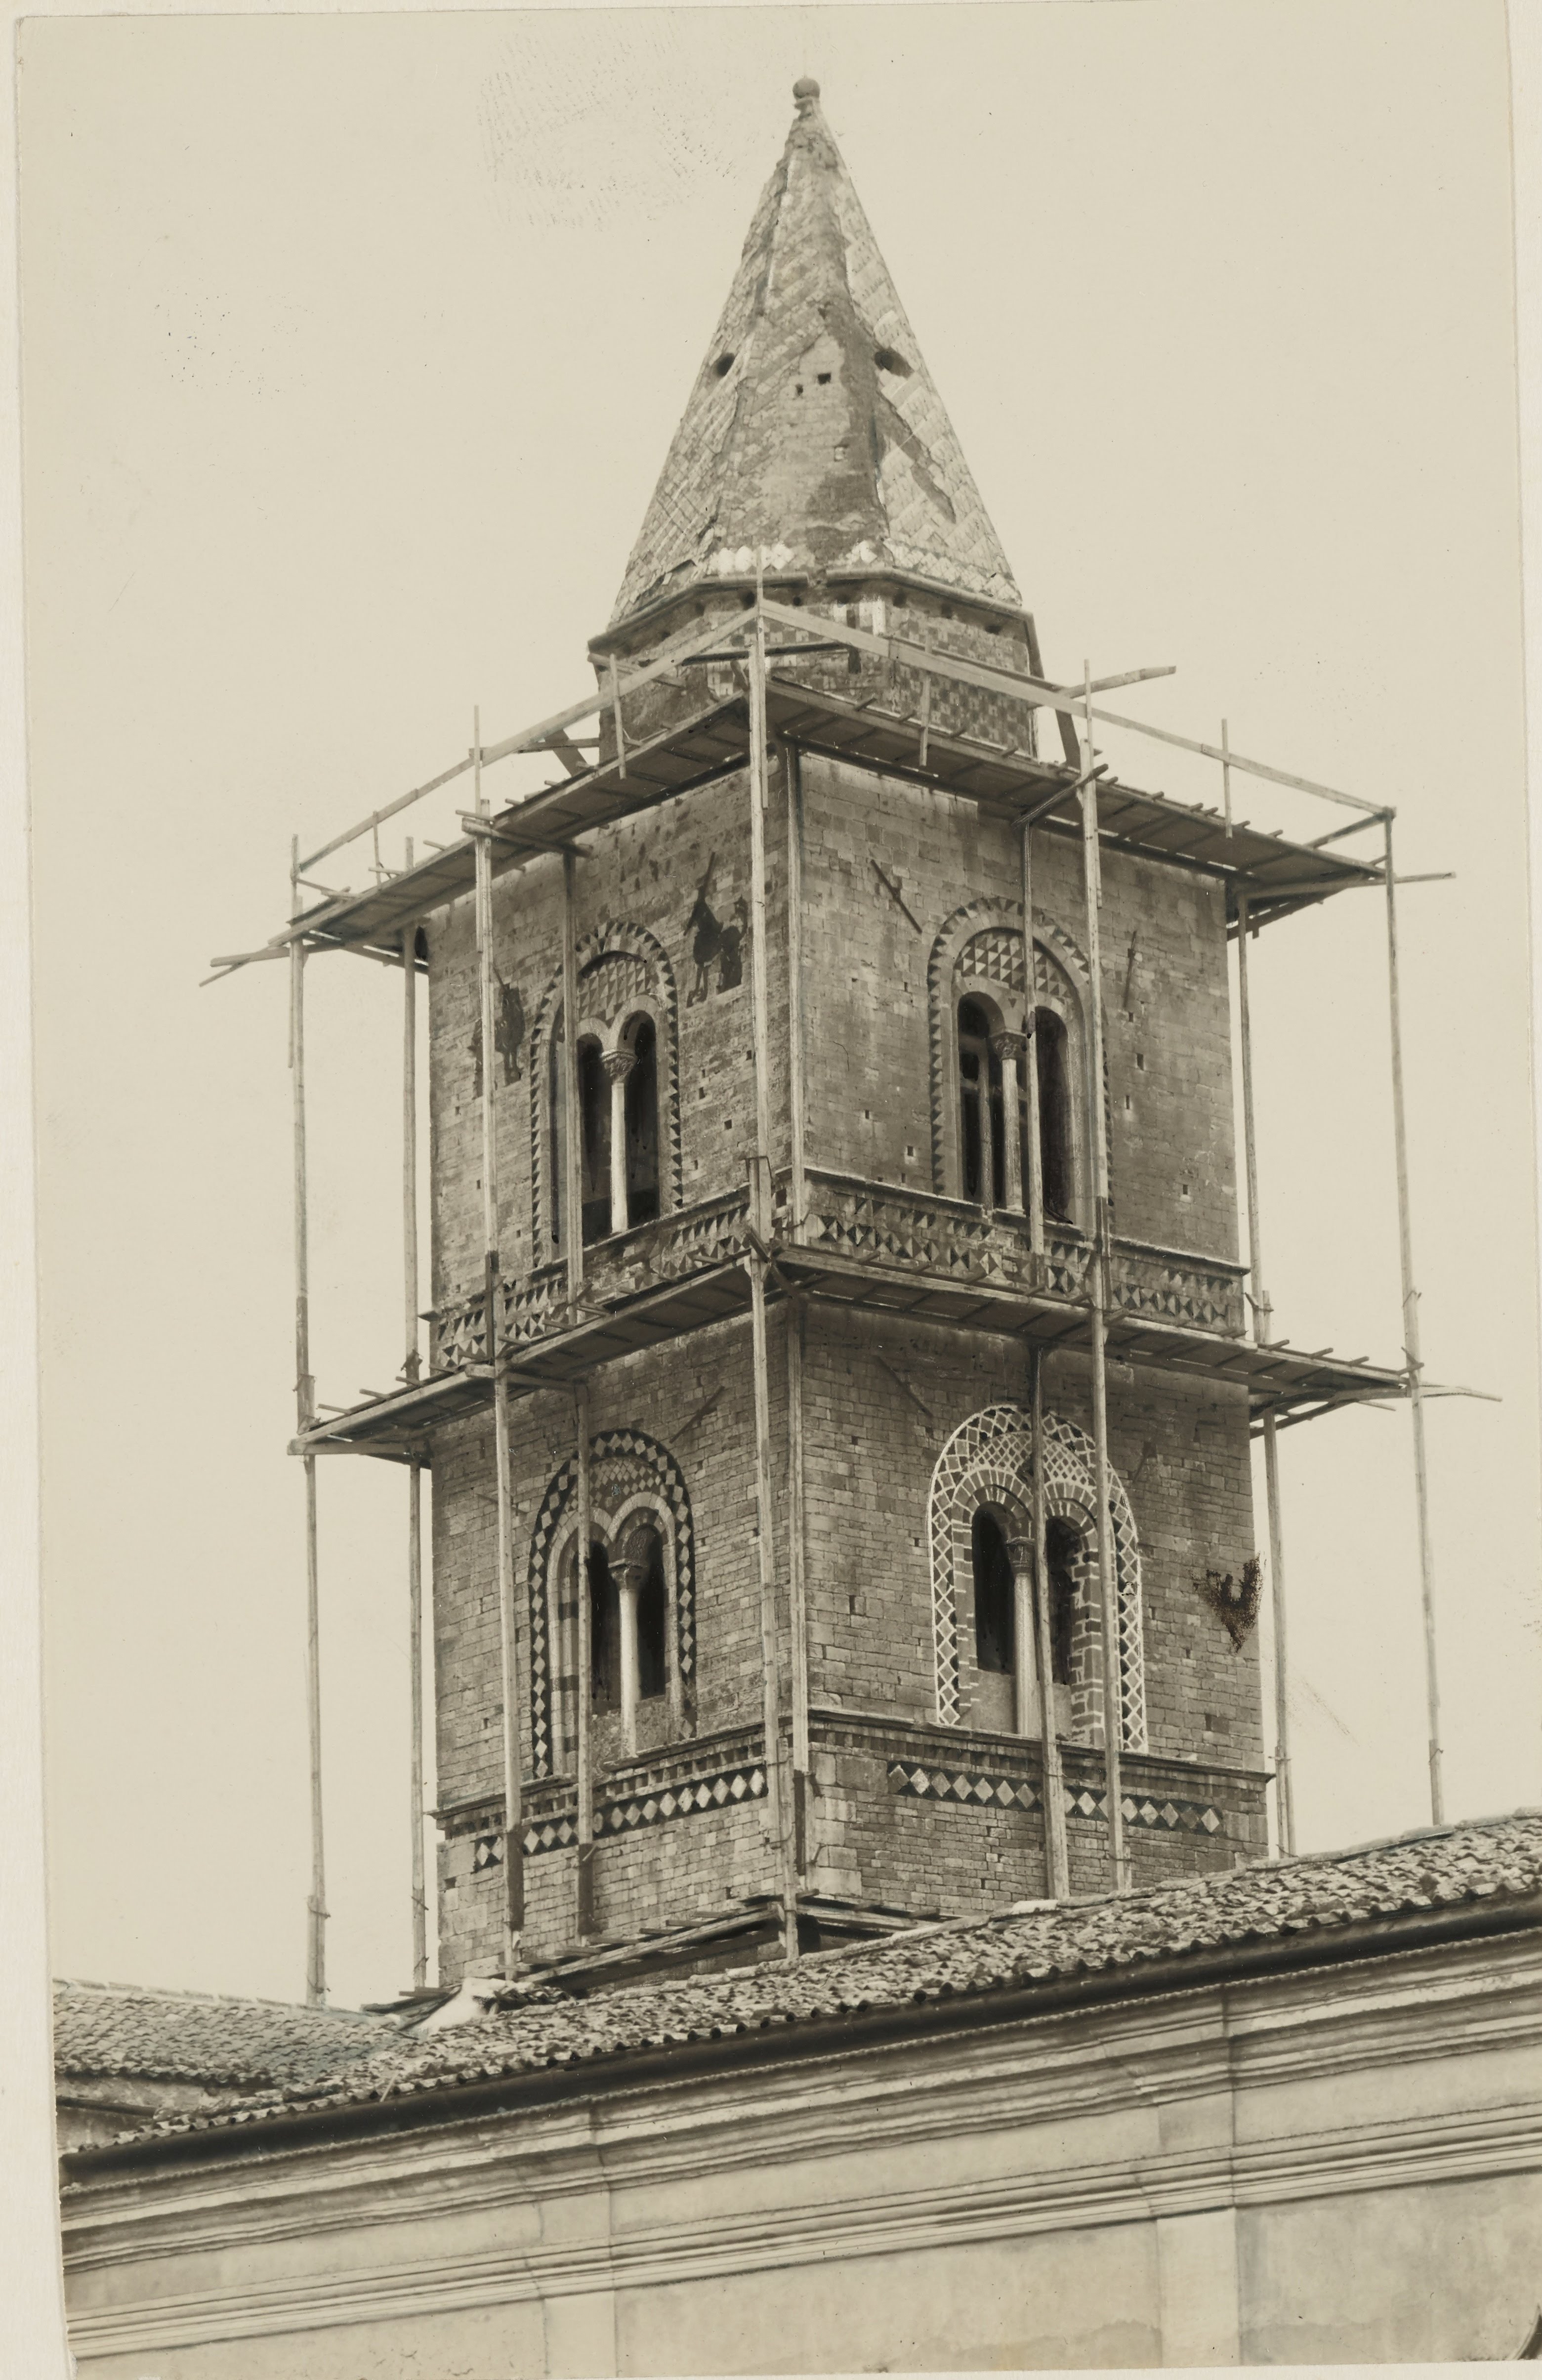 Fotografo non identificato, Melfi - Cattedrale dell'Assunta, campanile, particolare, 1926-1950, gelatina ai sali d'argento, MPI6061783